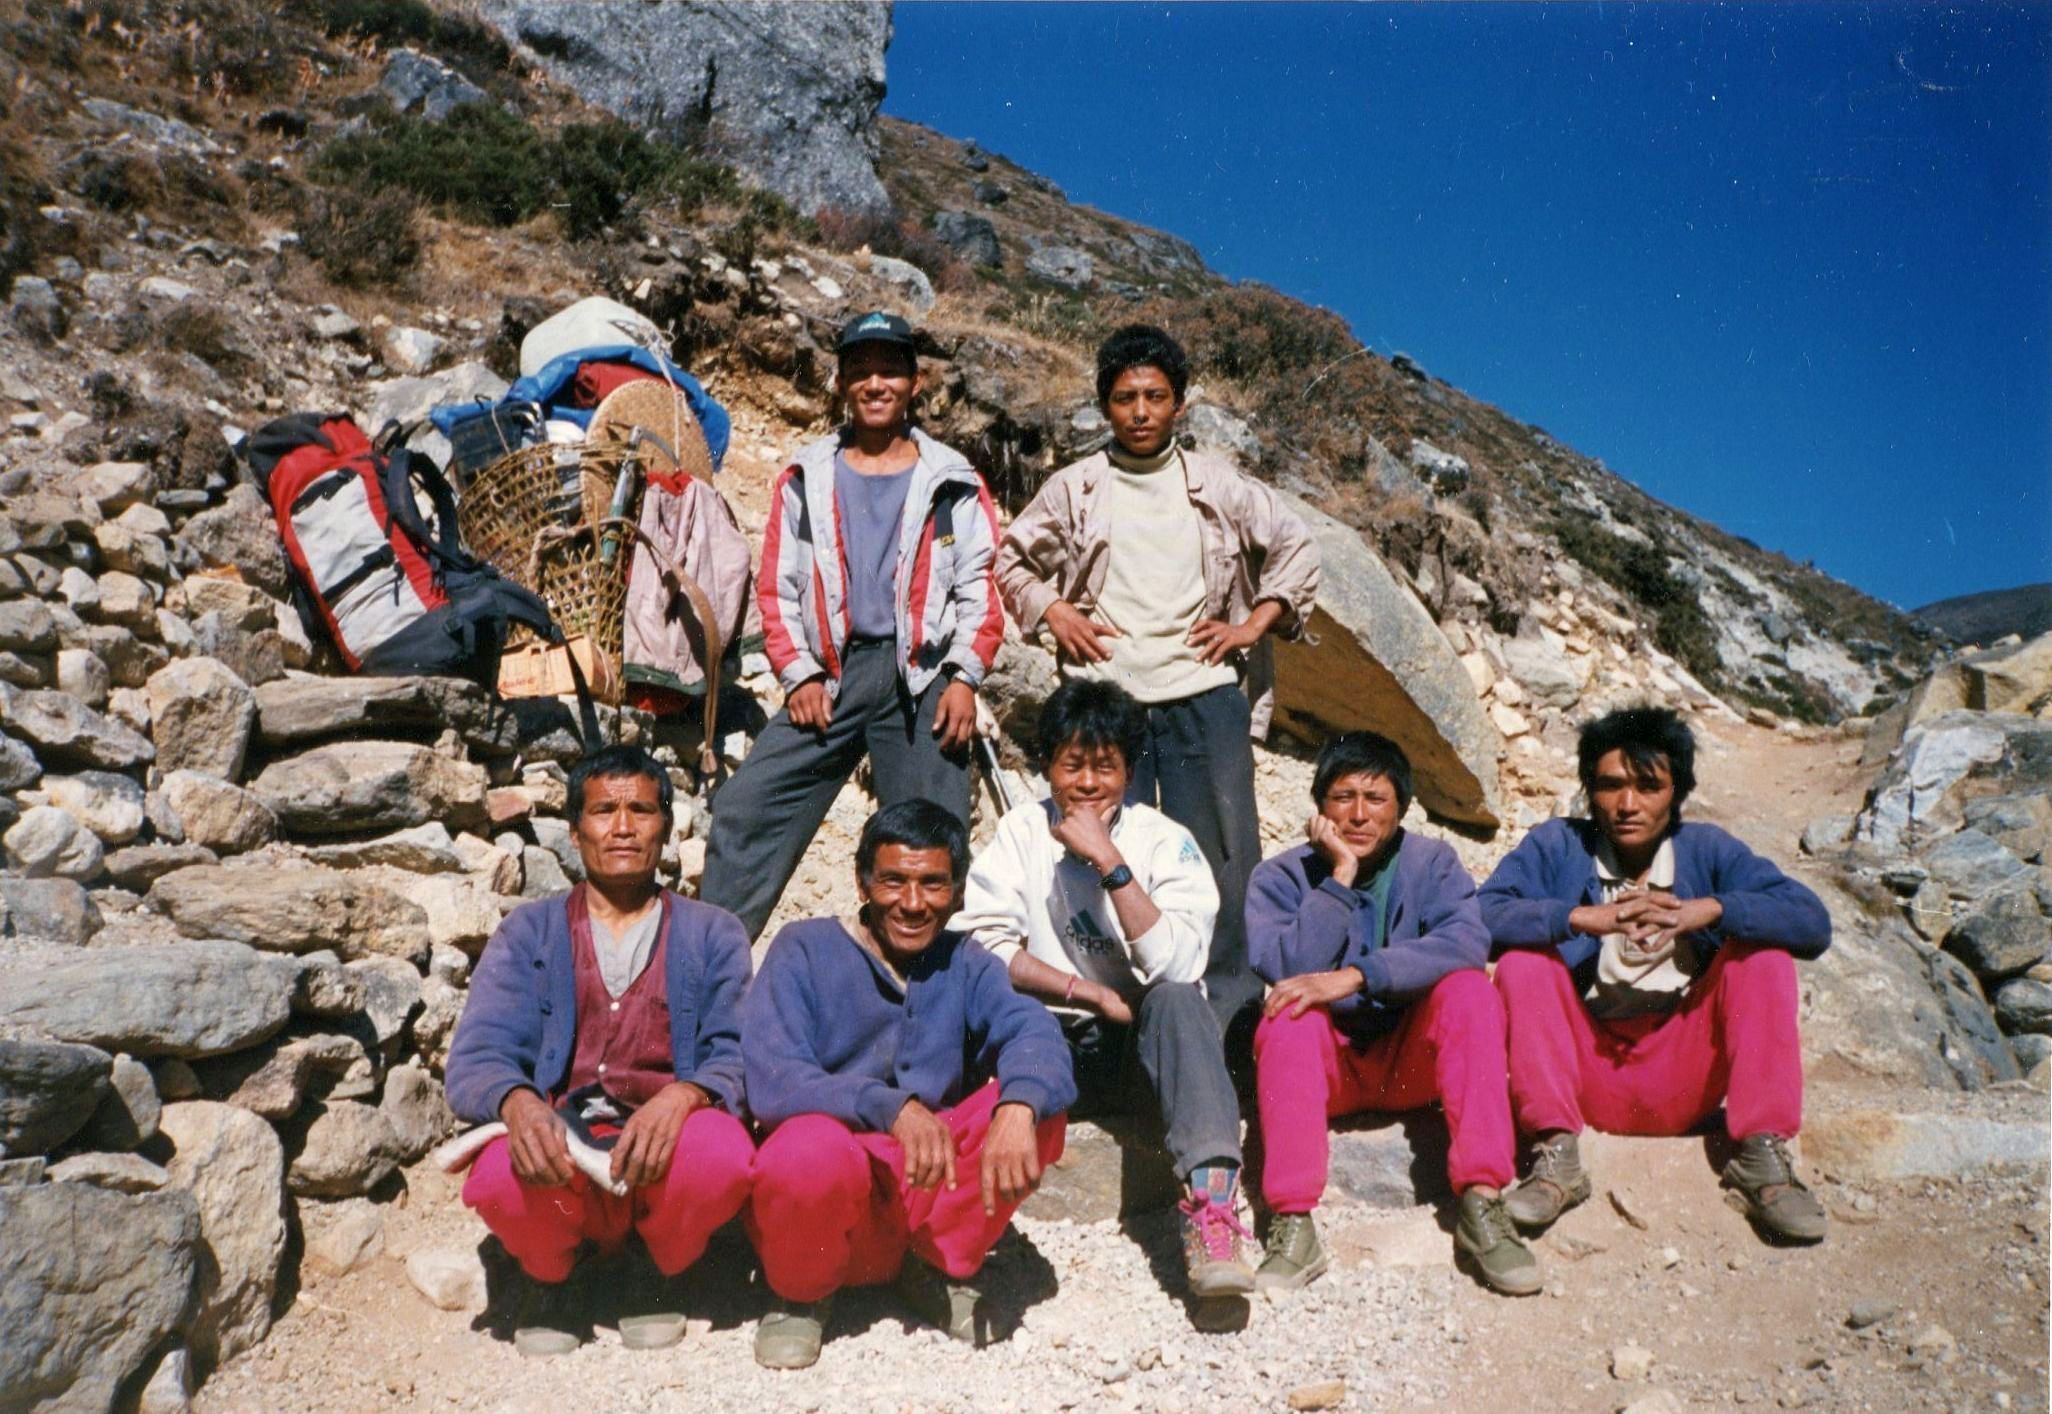 Trekking crew